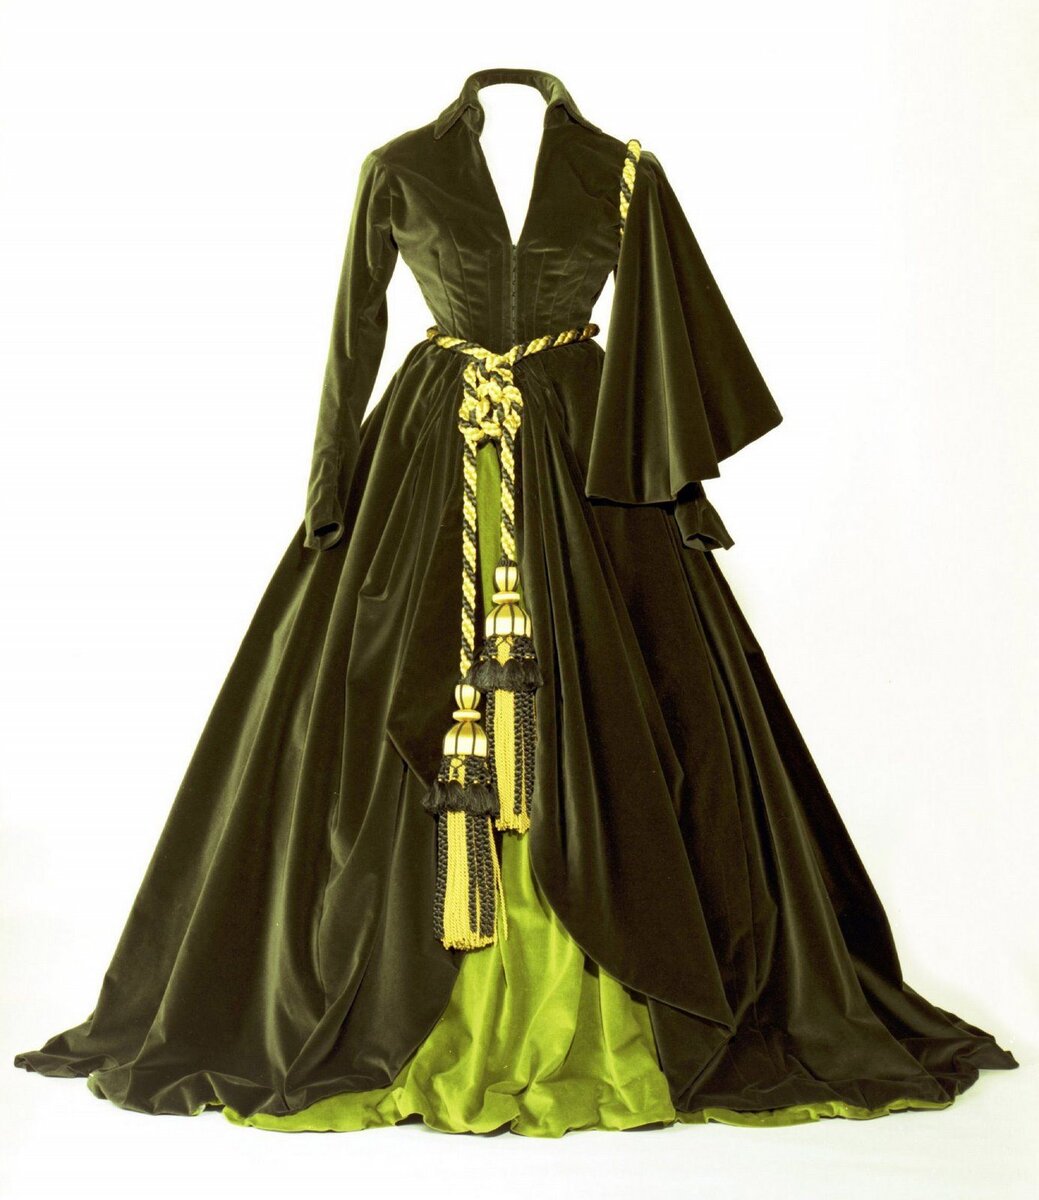 Скарлет Охара в зеленом платье